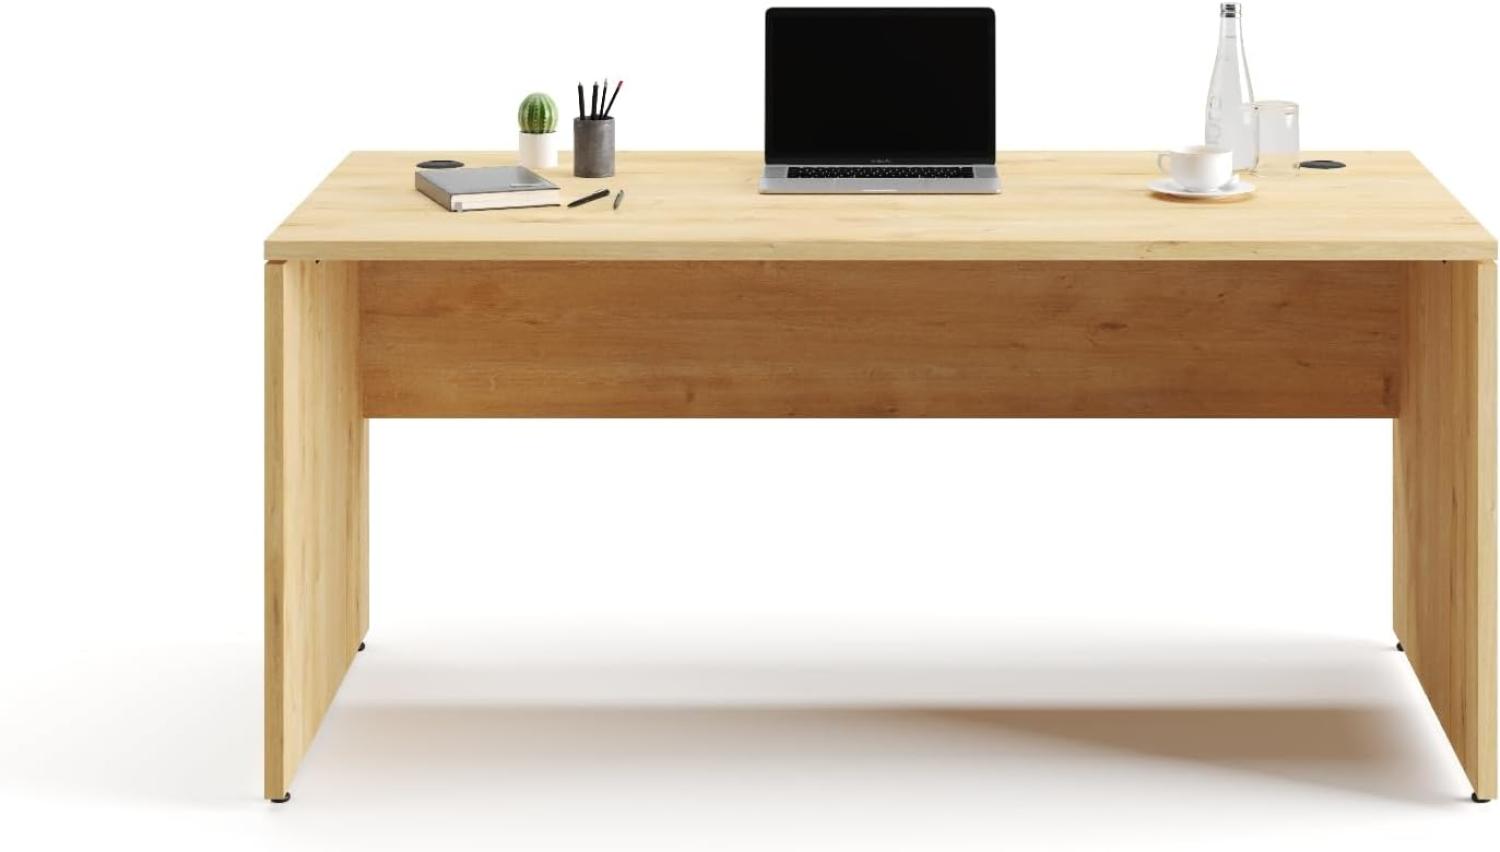 Furni24 Schreibtisch fürs Arbeitszimmer und Home Office - Großer laminierter Computertisch aus Holz, 2 Kabeldurchlässe, Bodengleiter, 2-Personen-Arbeitsplatz (Saphir-Eiche, 180x80x75 cm) Bild 1